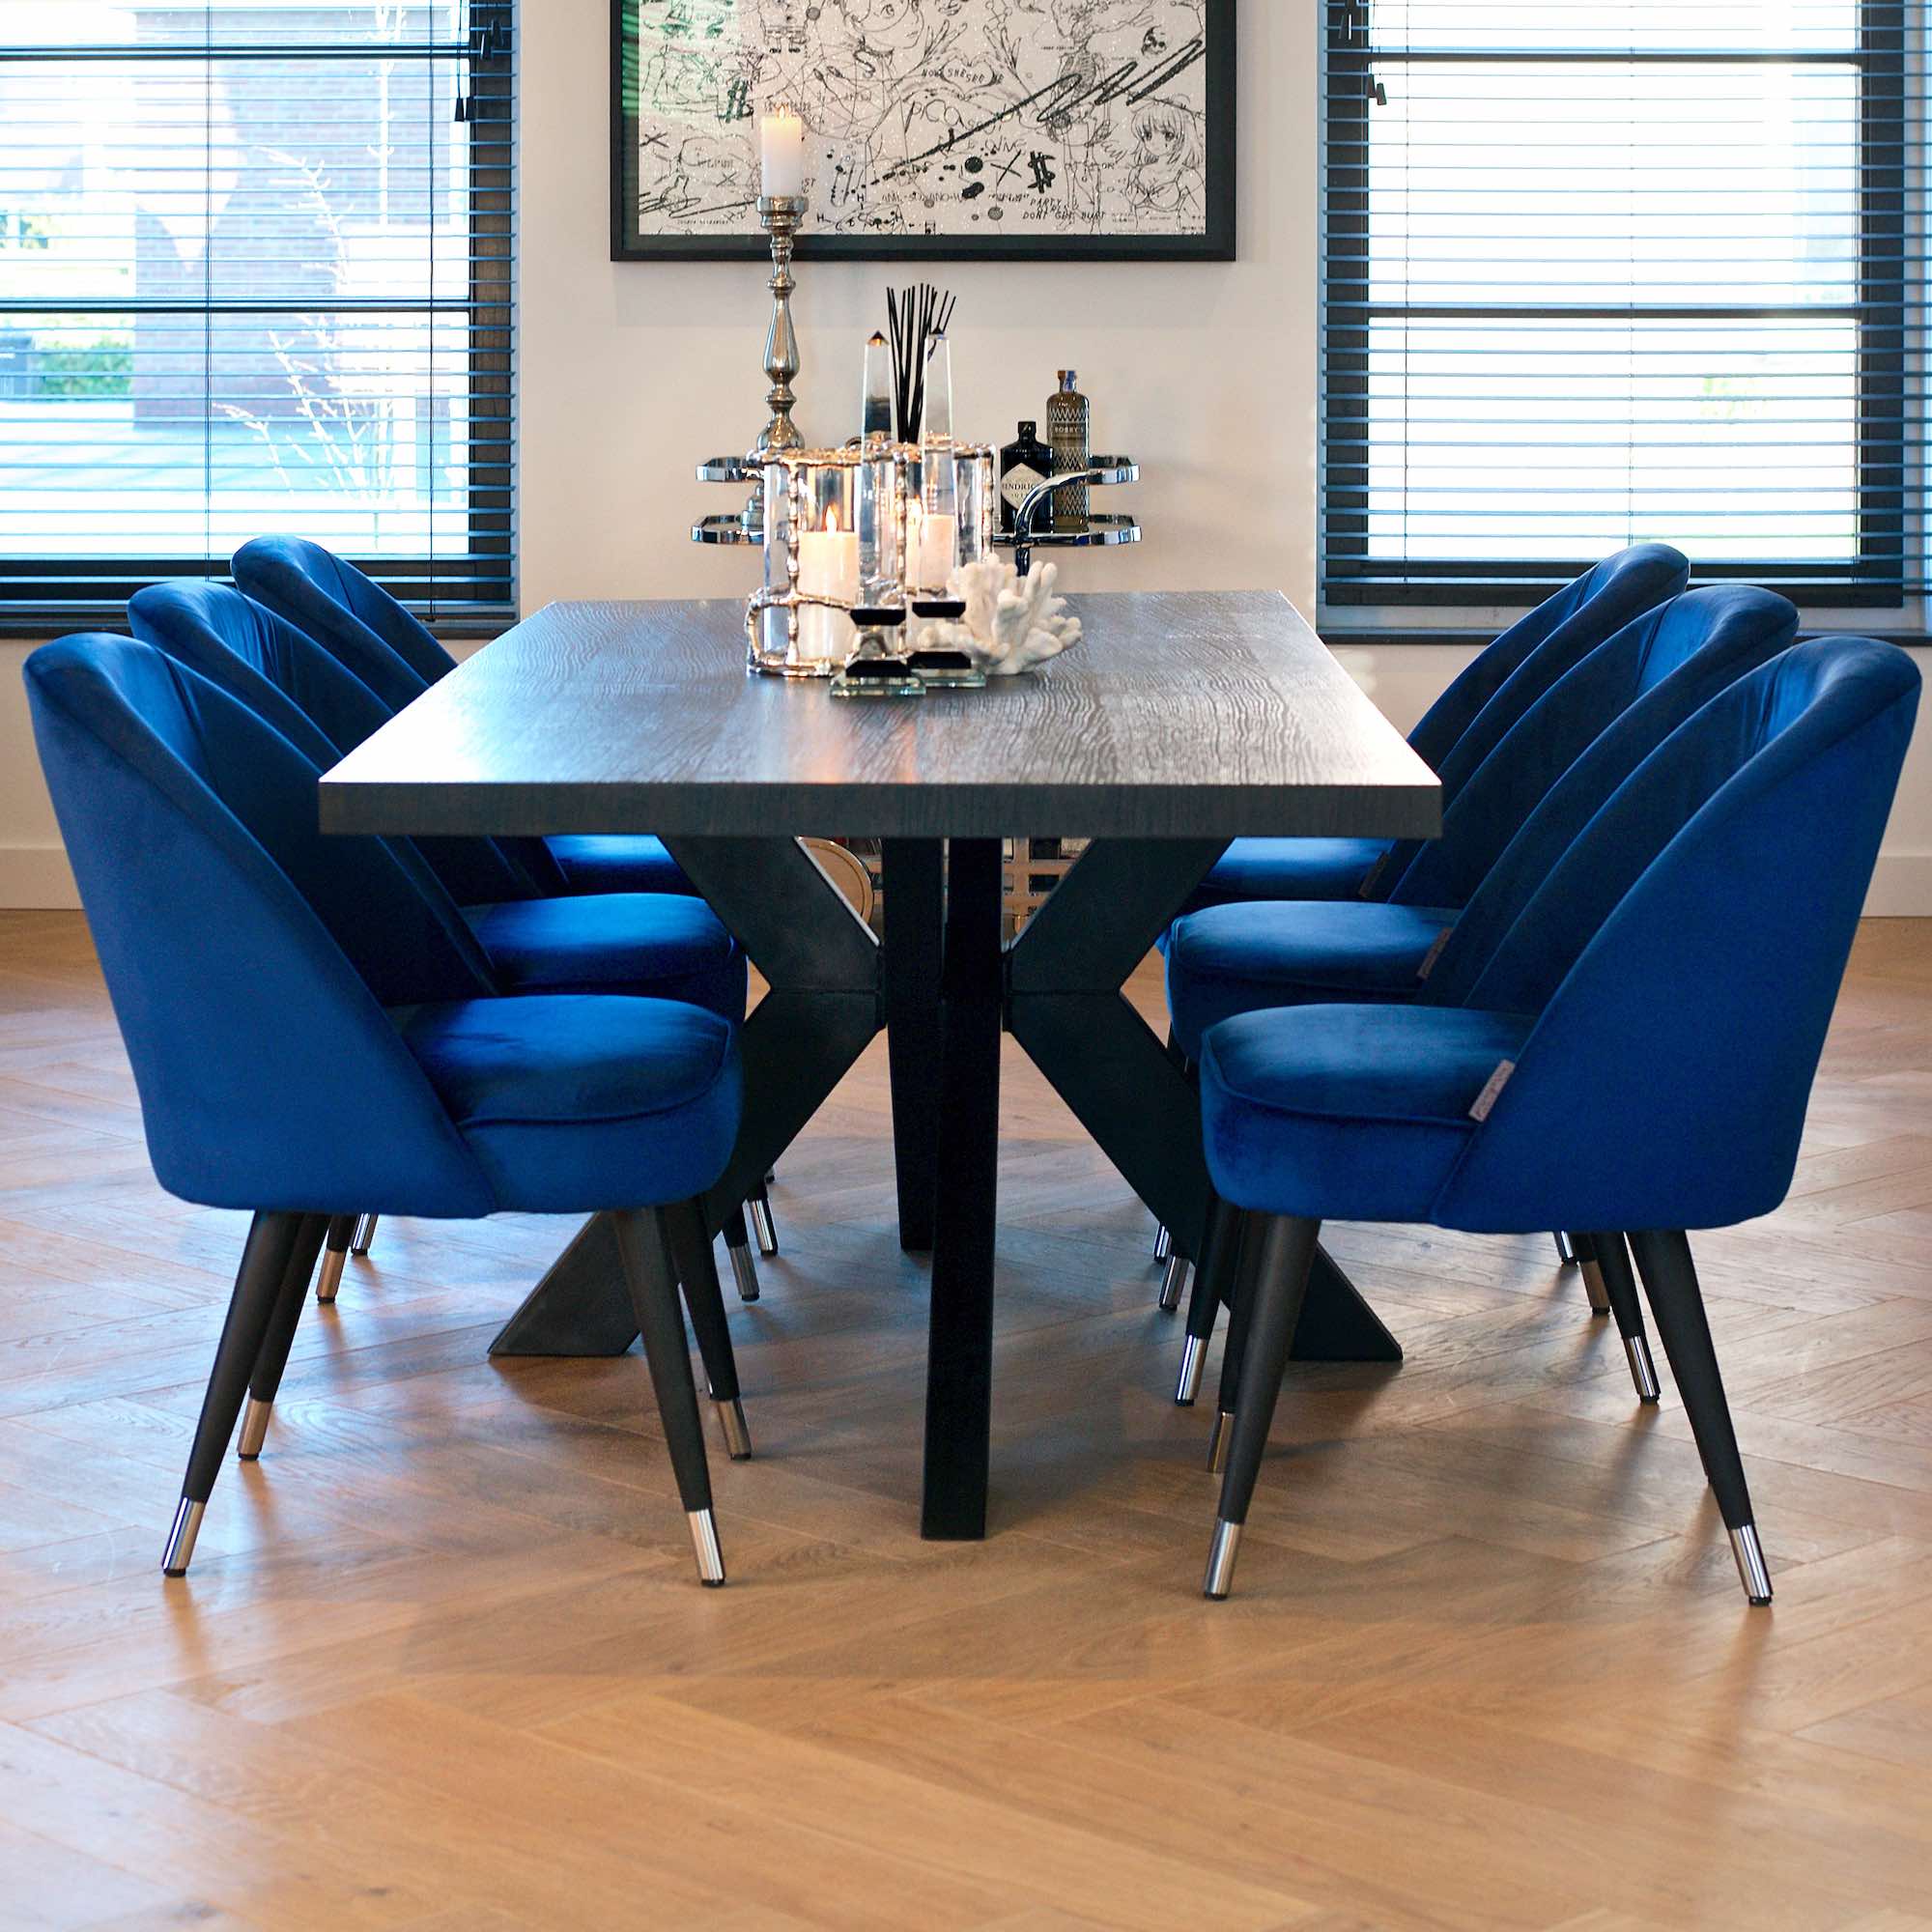 Blue Velvet Dining Chair Juliettes, Blue Velvet Dining Room Table Chairs